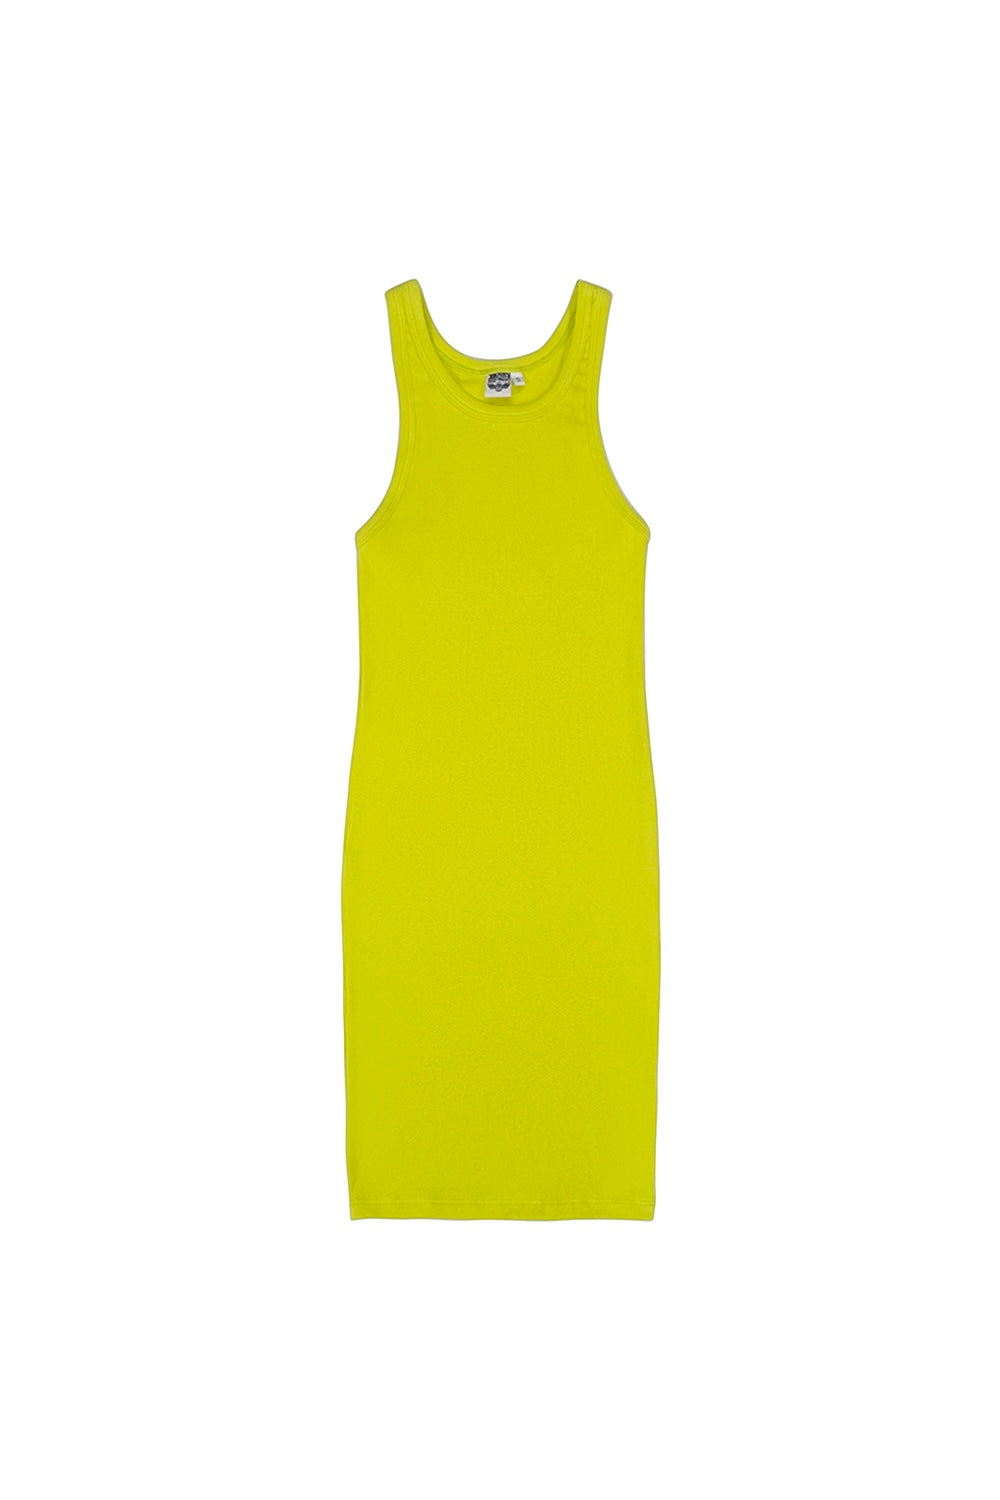 Daphne Dress | Jungmaven Hemp Clothing & Accessories / Color: Limelight